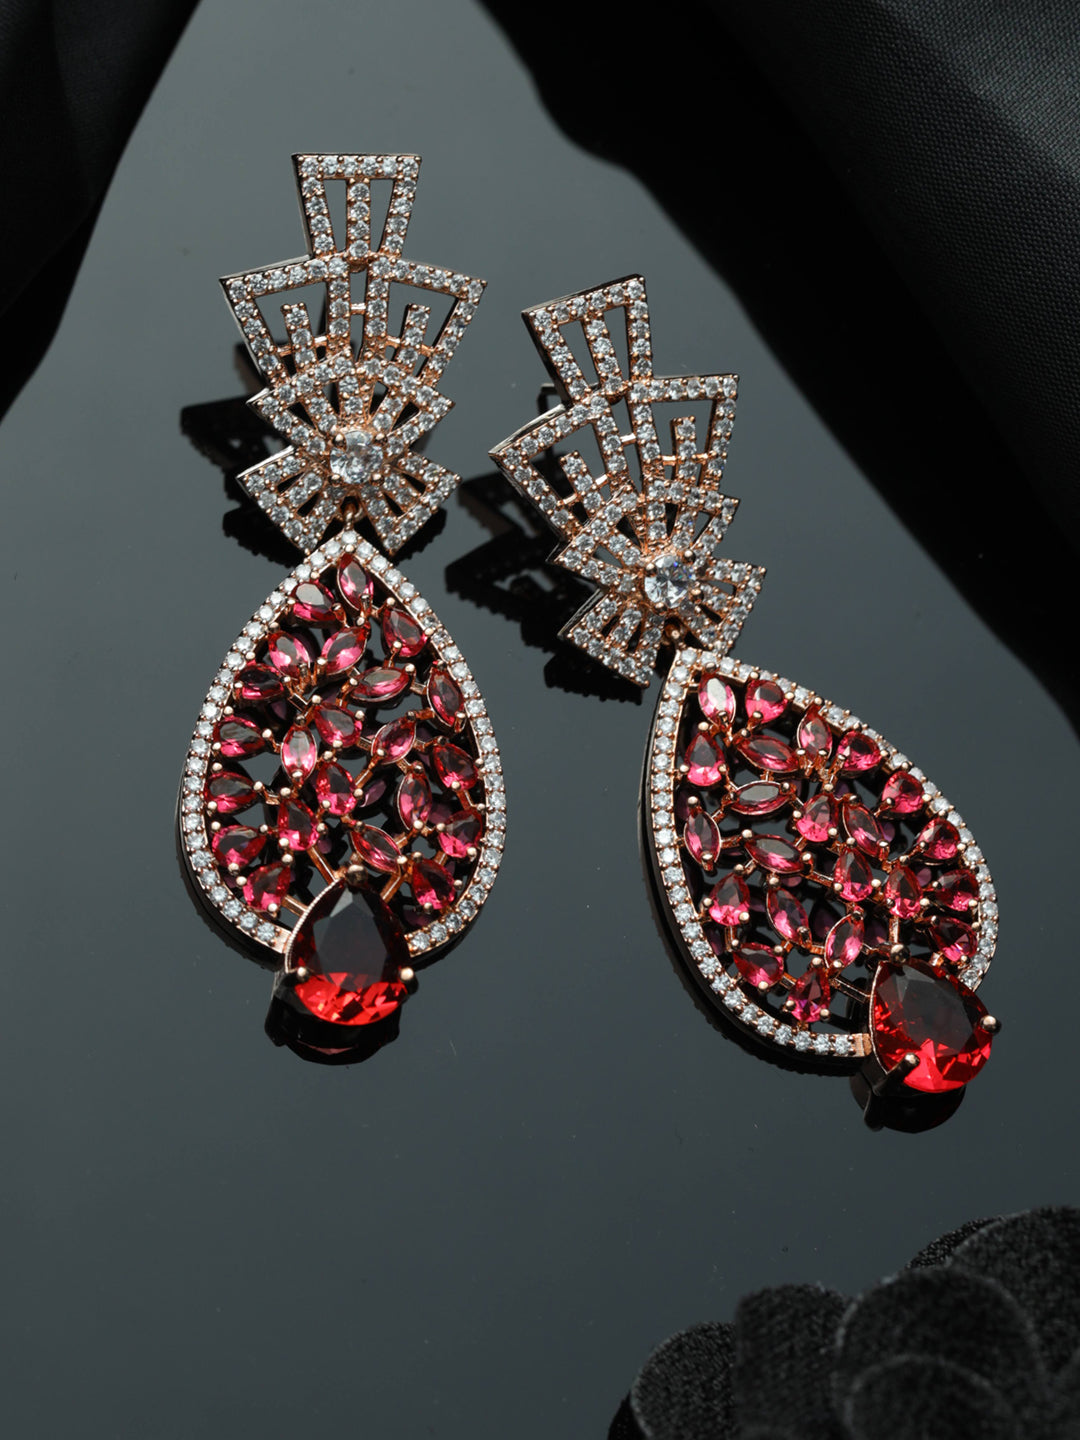 Priyaasi Sparkling Pink American Diamond Floral Drop Earrings